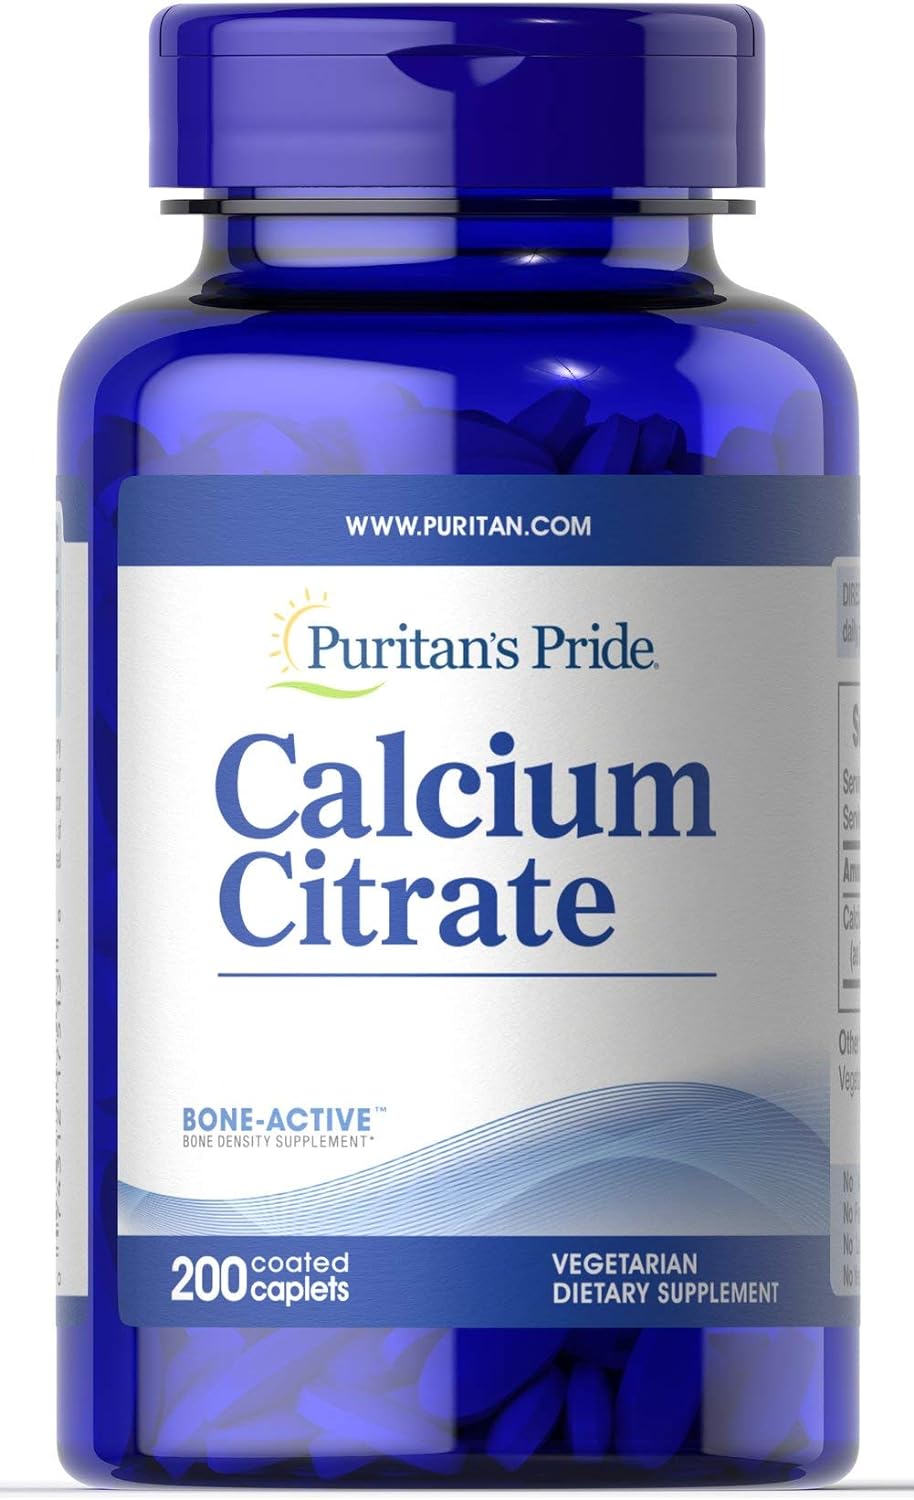 Puritans Pride Calcium Citrate 200 Mg per coated caplet, White, 200 Count